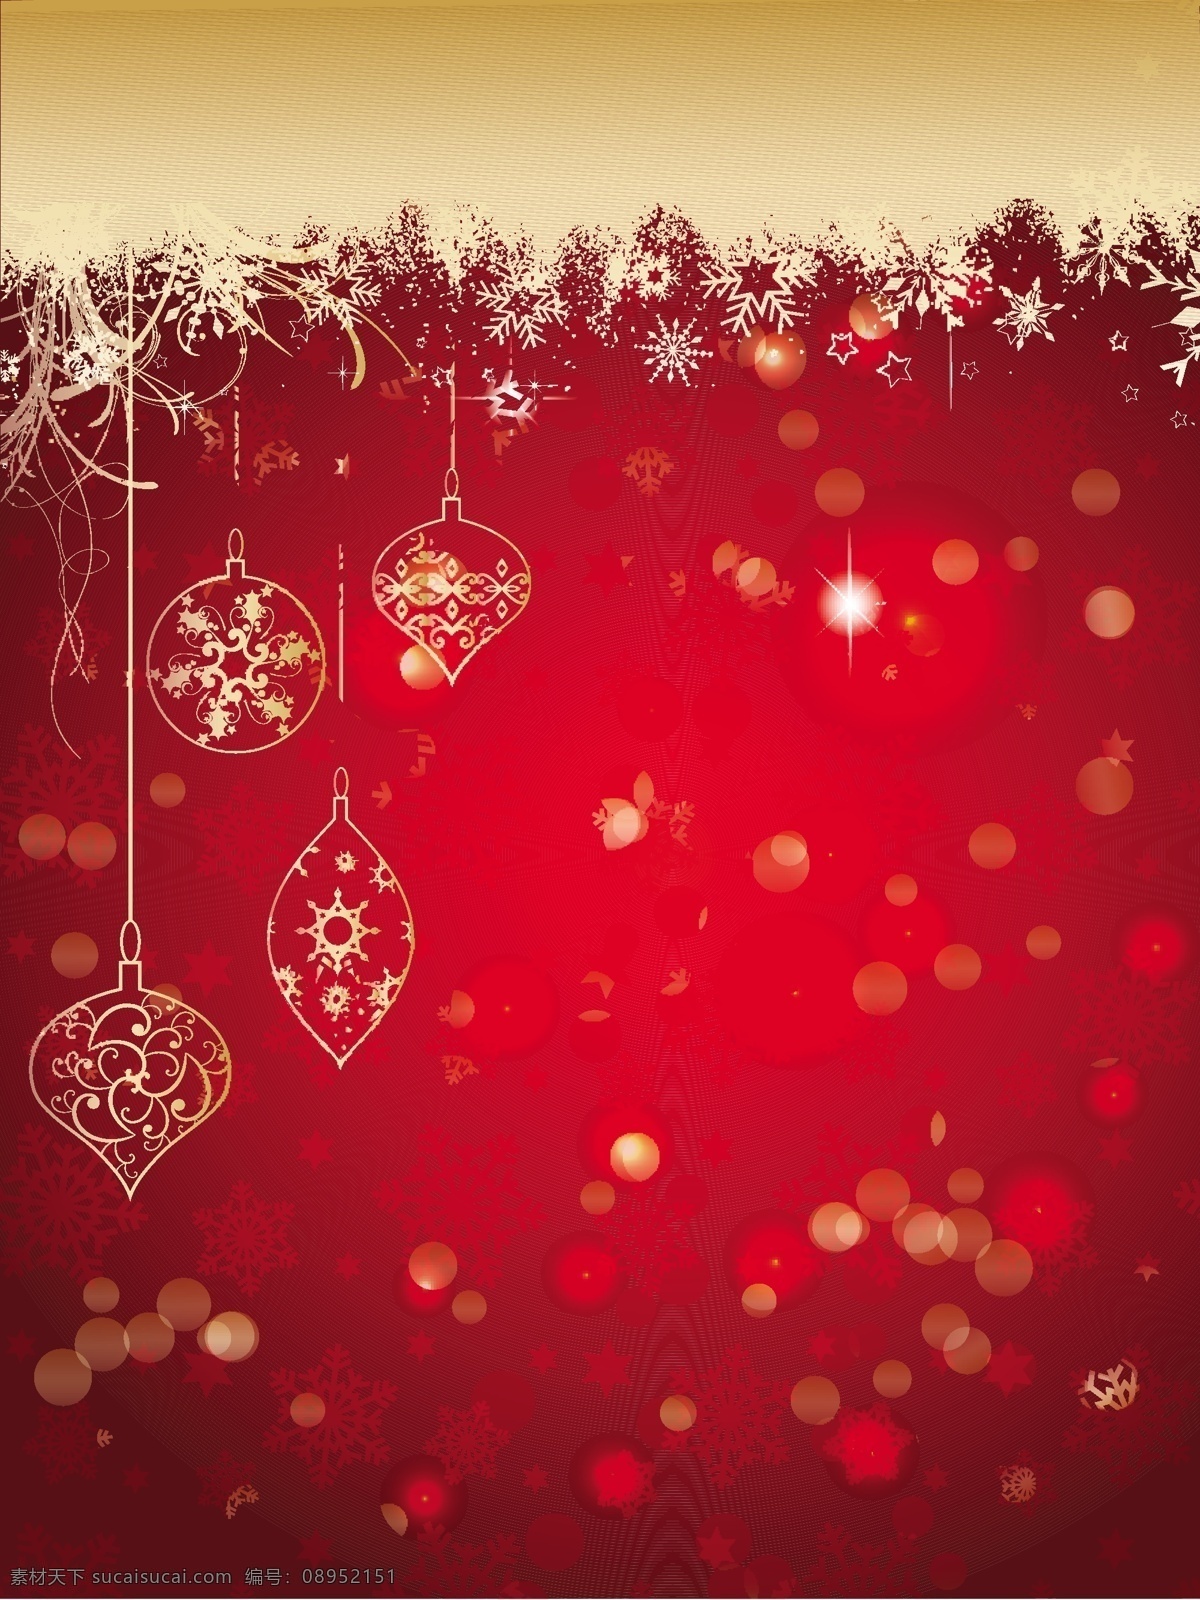 手 放在 一个 背景 虚化 红色 画 圣诞球 圣诞节 抽象的 一方面 圣诞快乐 冬天 手画的 快乐的 红色的 圣诞节的背景 红色背景 庆典 节日 灯光 背景虚化 闪耀 节日快乐